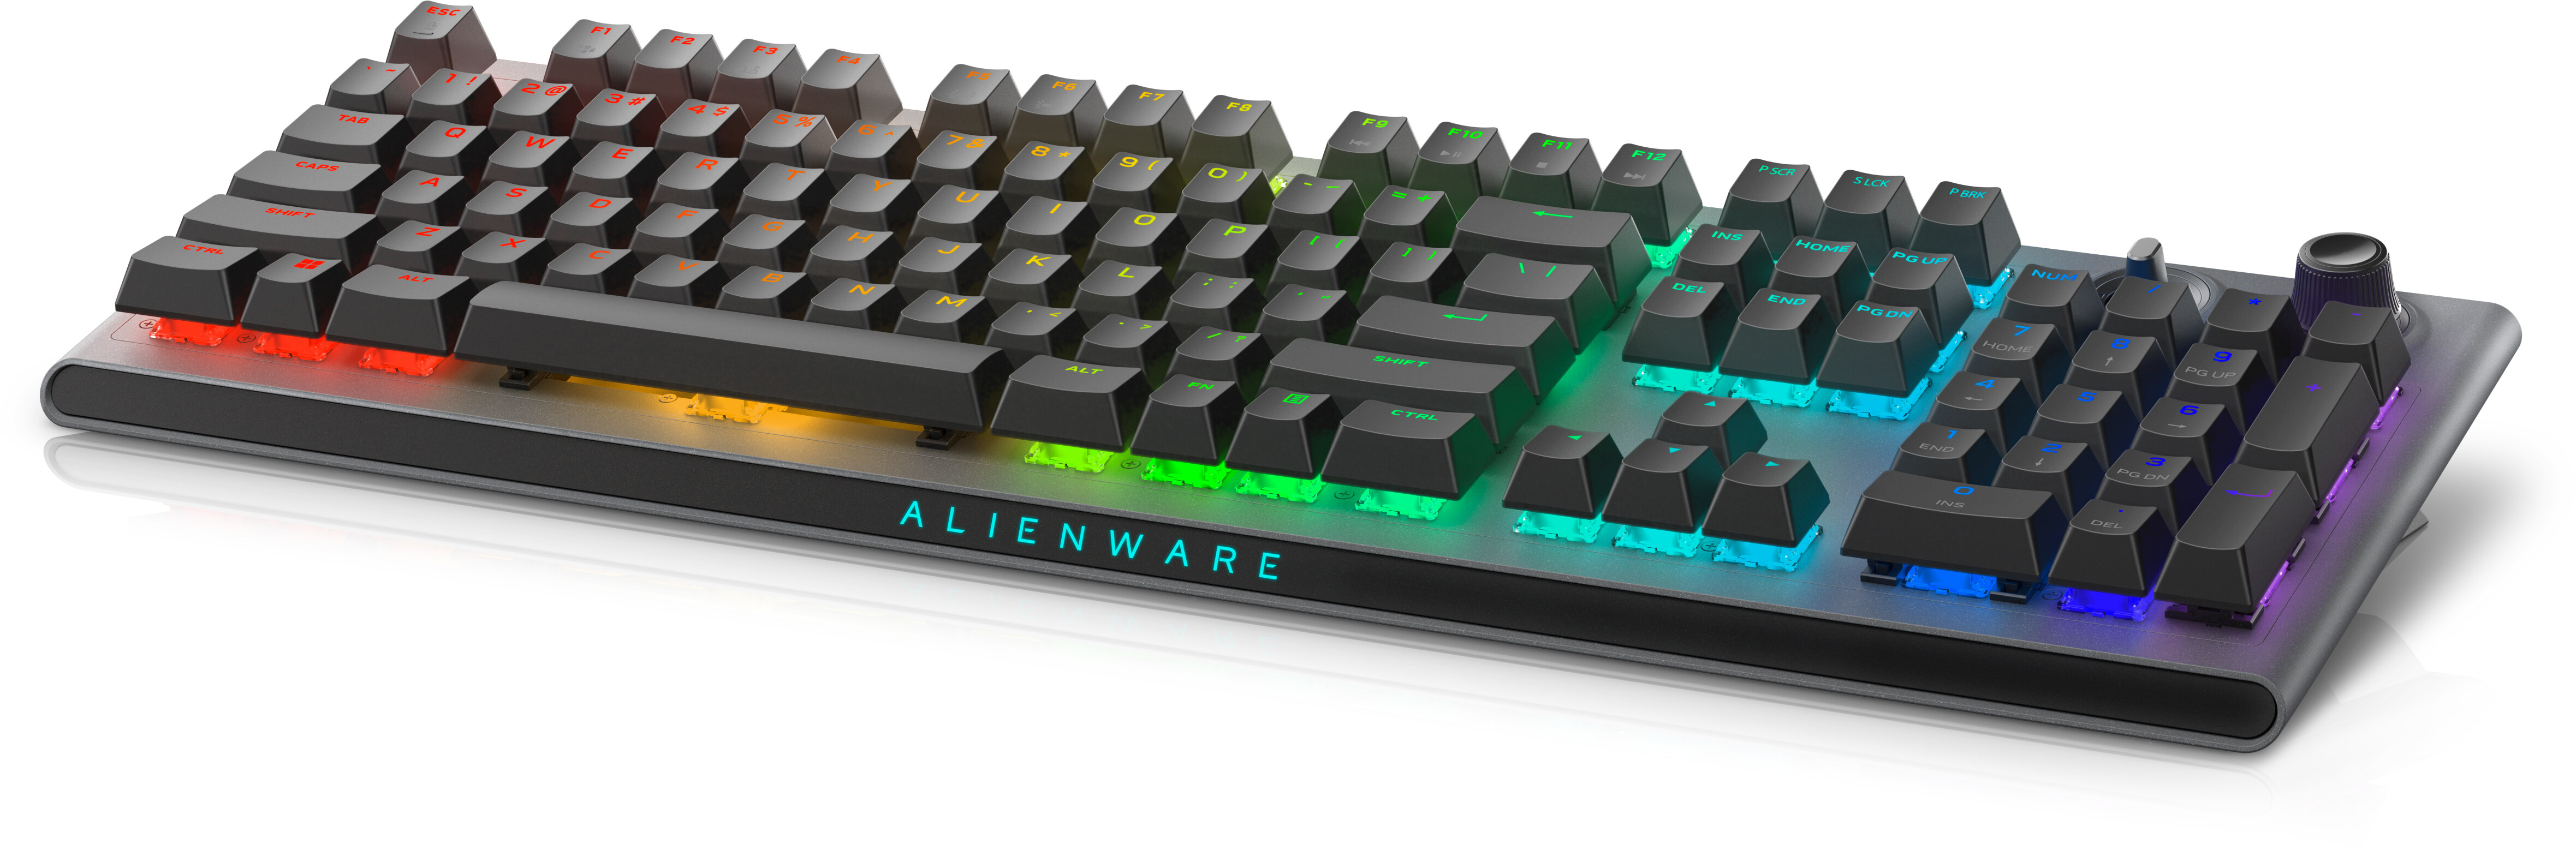 Alienware présente son premier clavier TKL pour gamers 